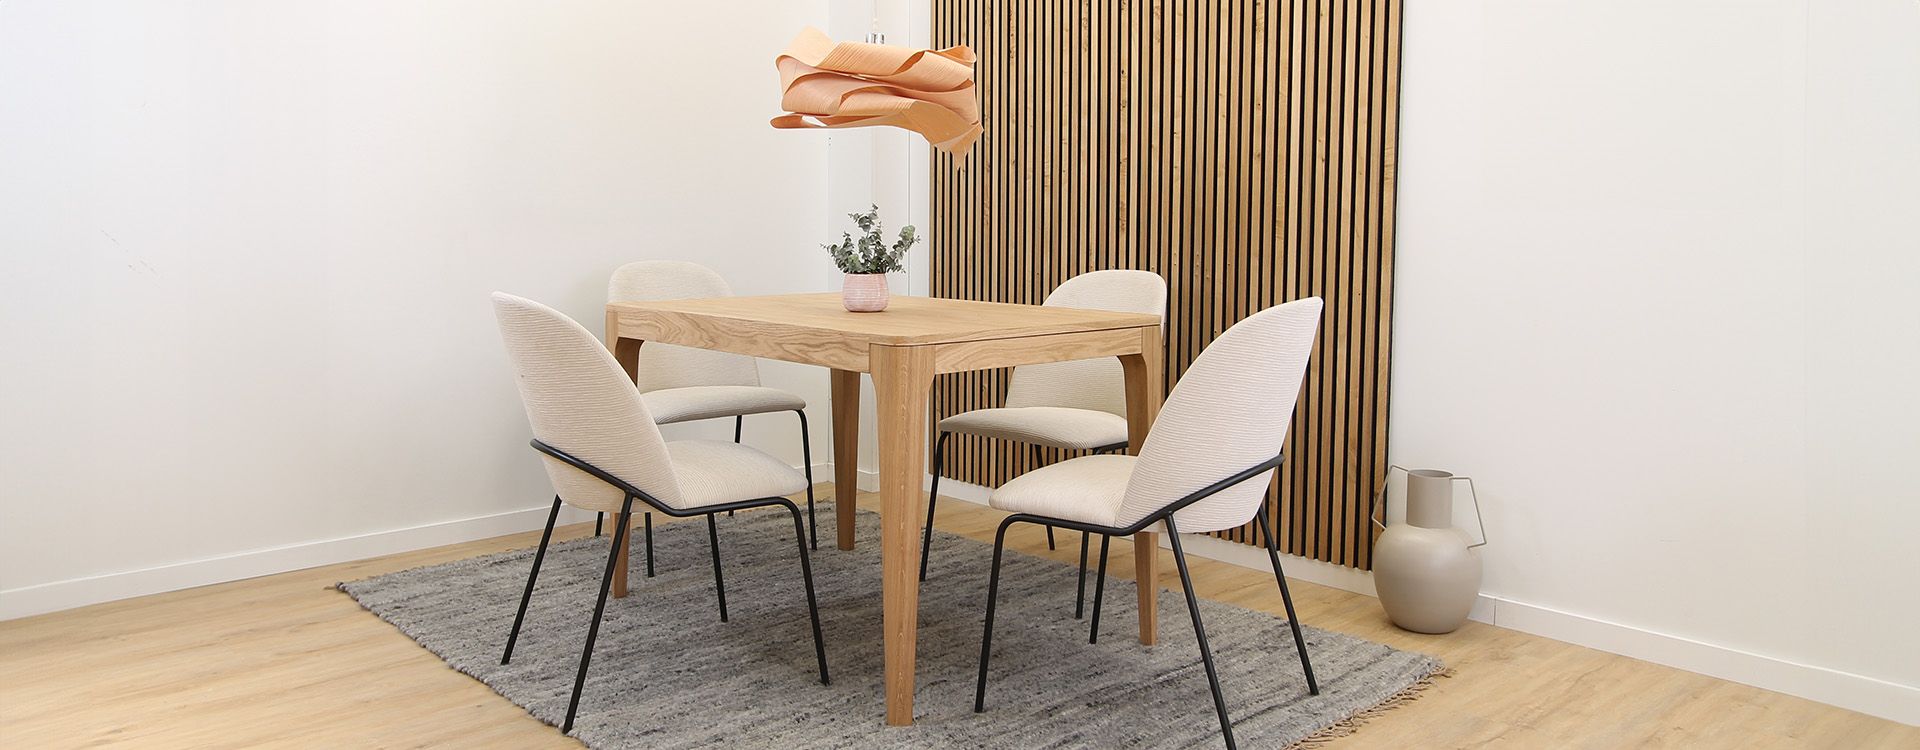 Table extensible en bois massif